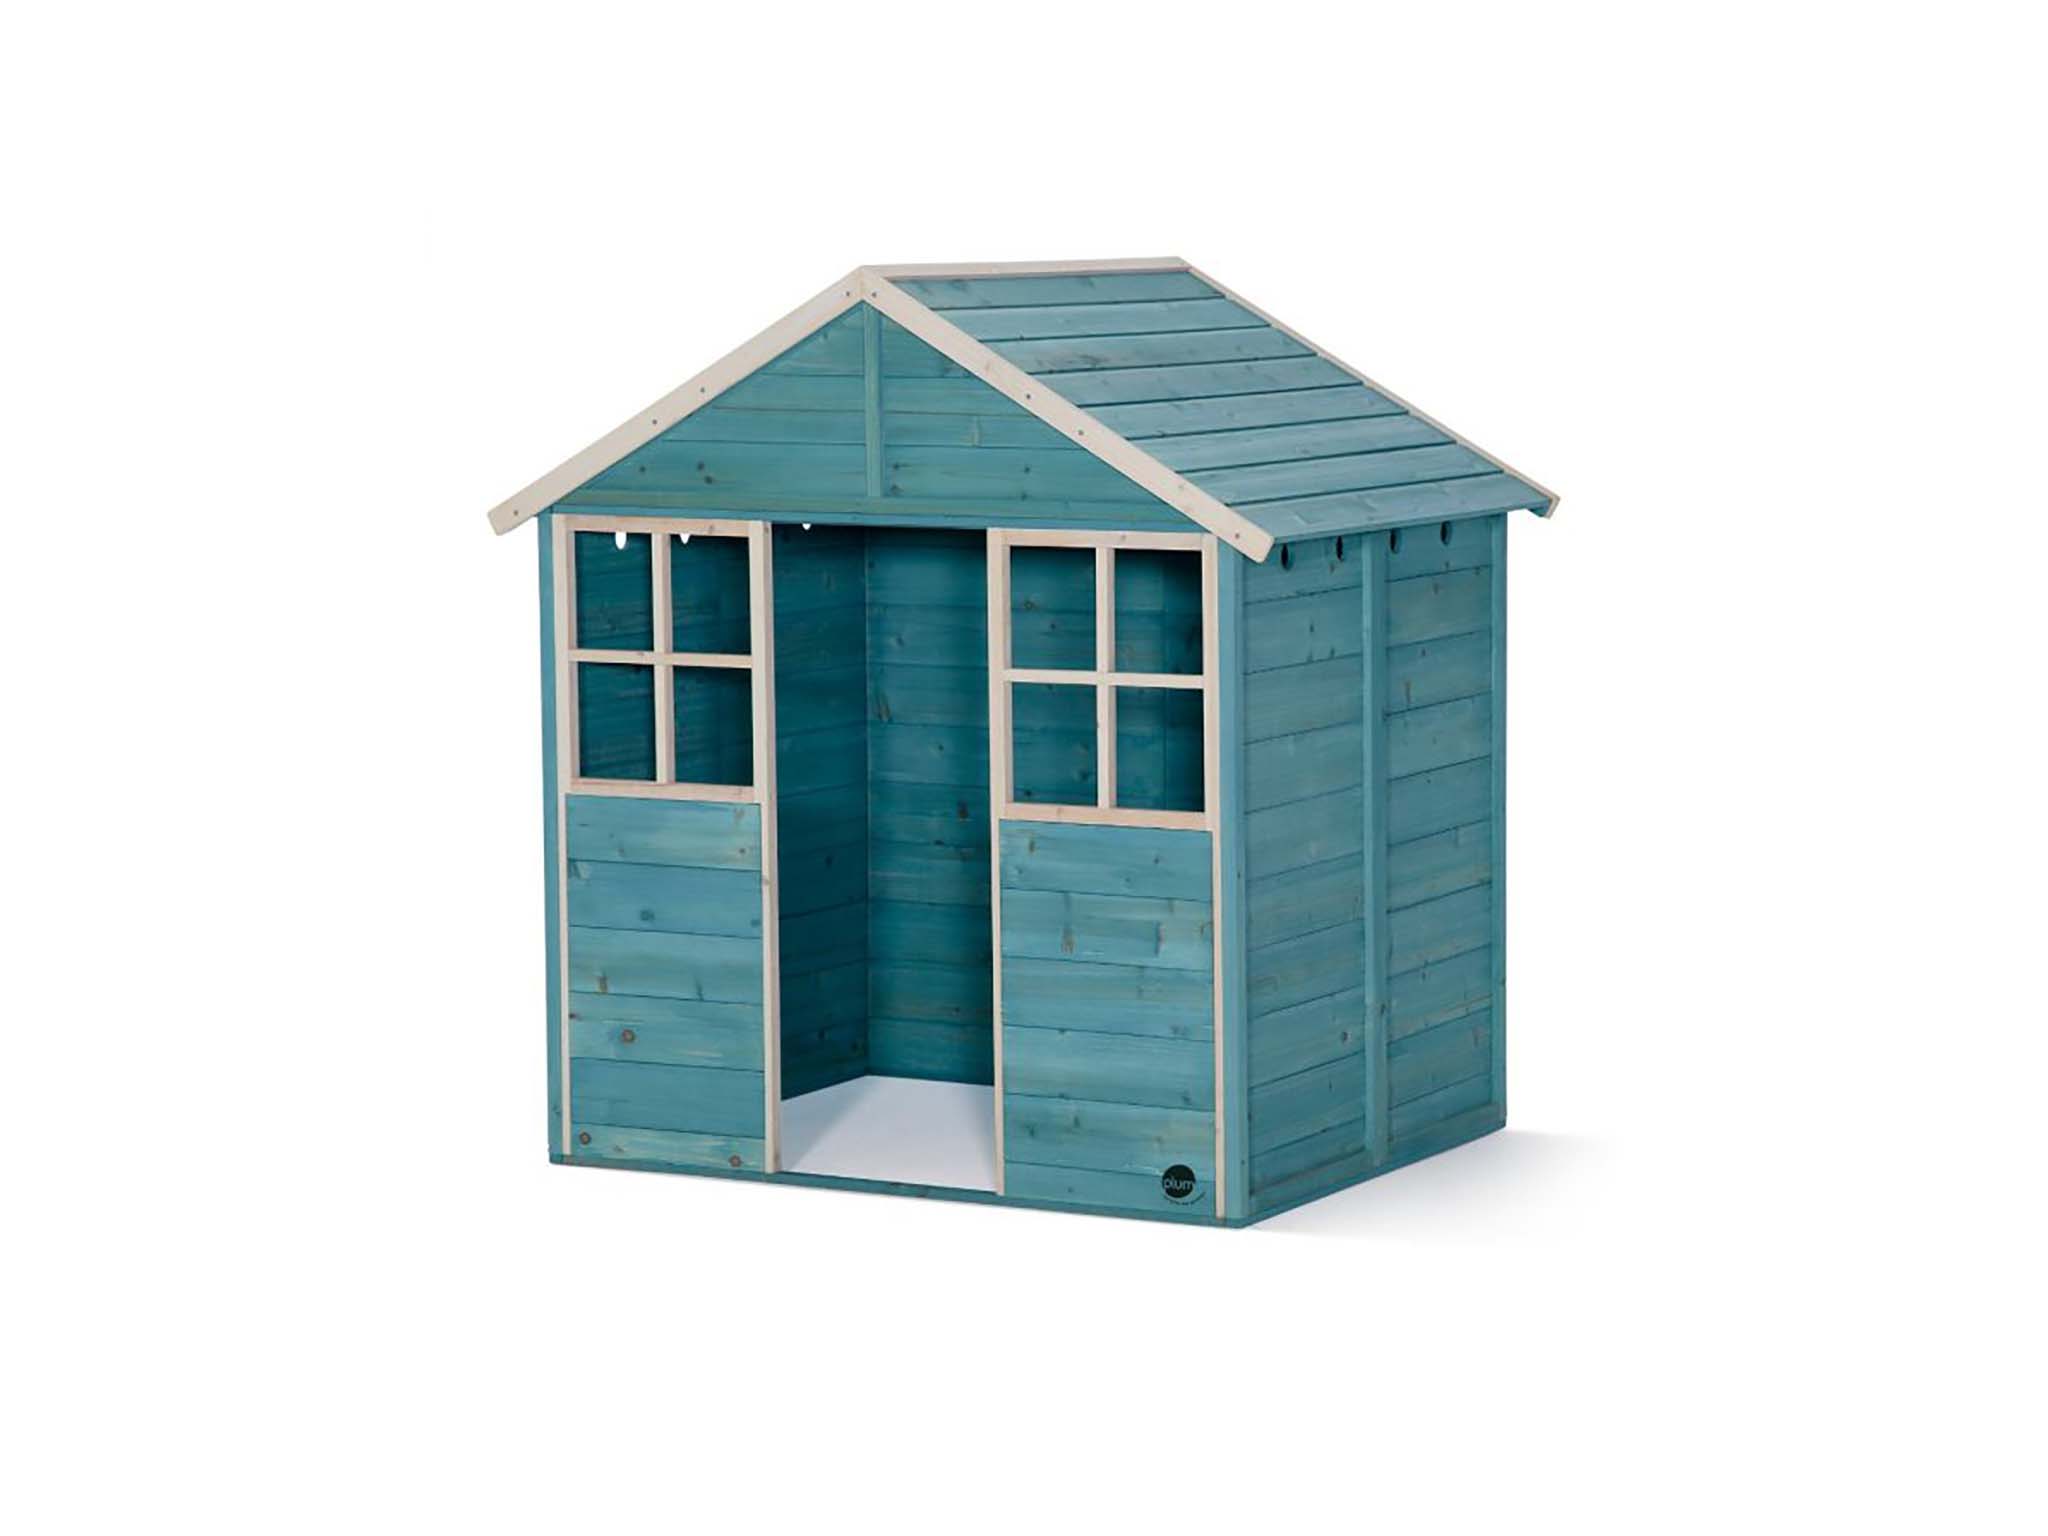 Garden hut wooden playhouse